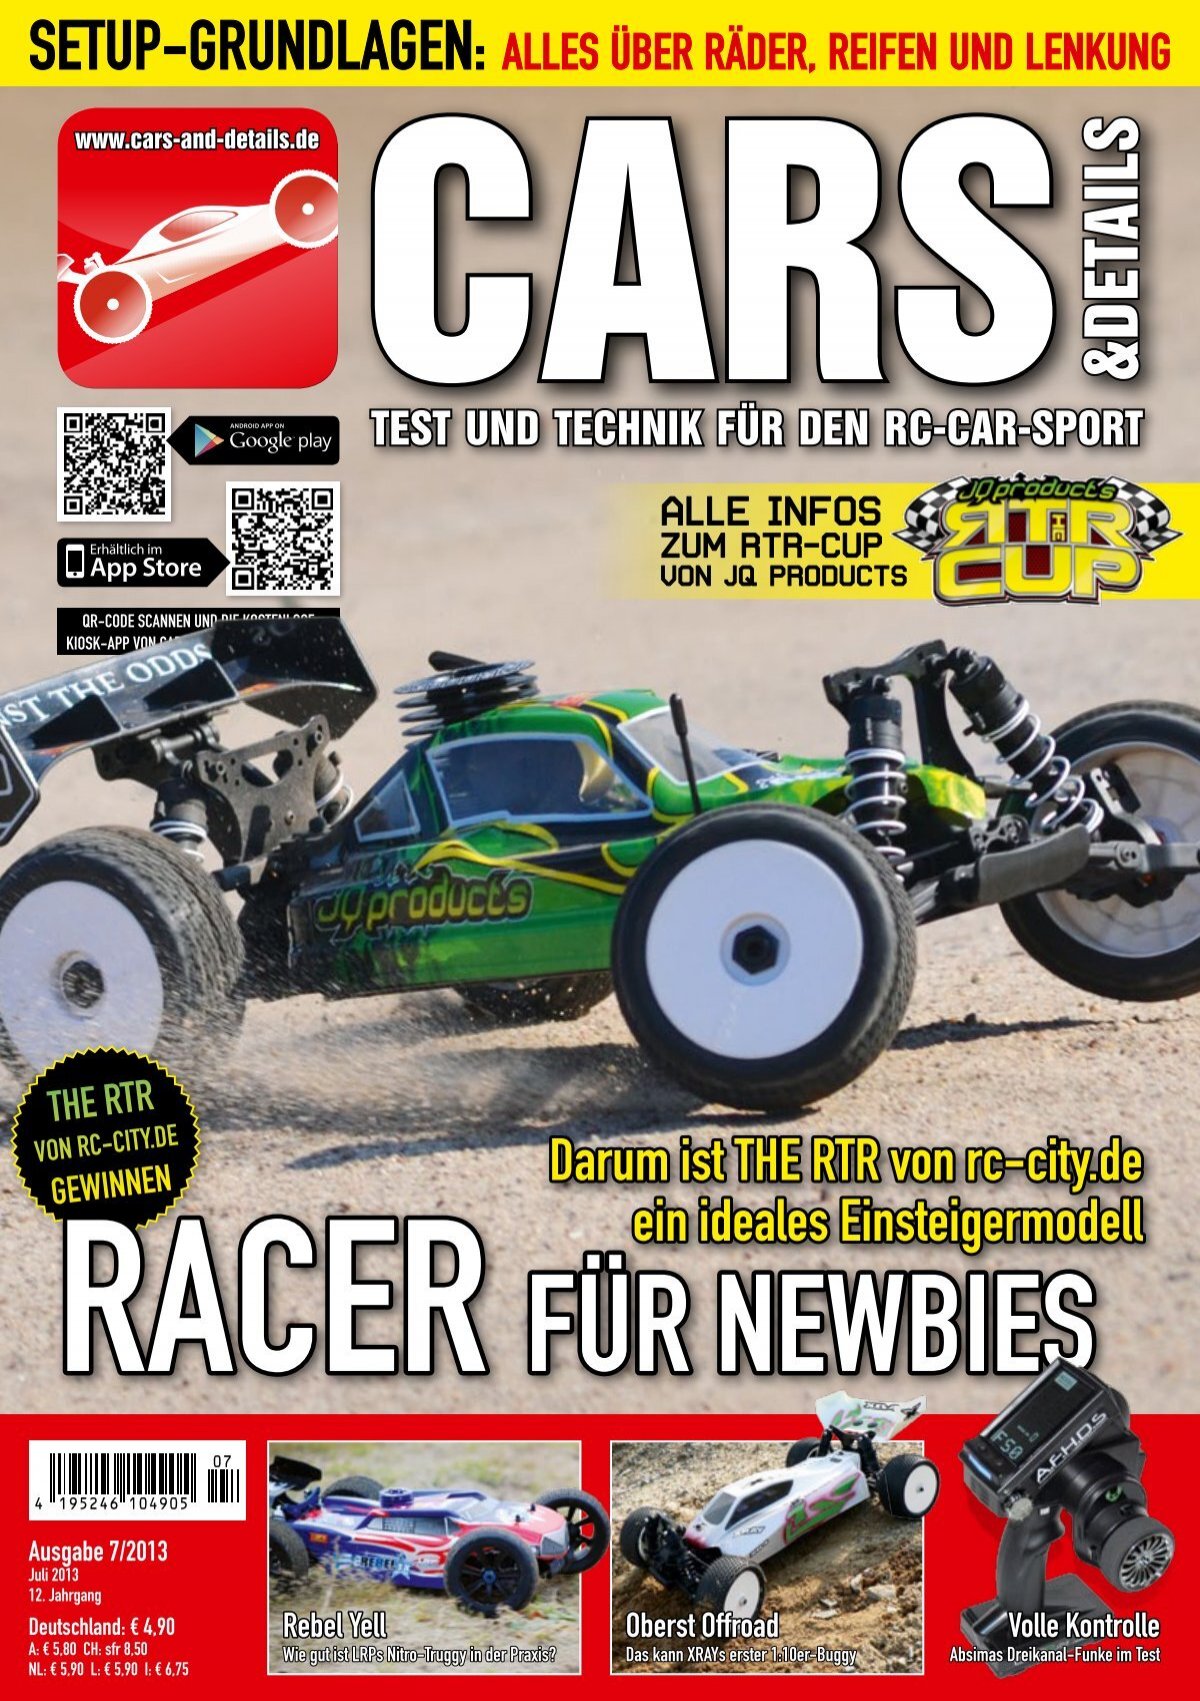 CARS & Details Racer für Newbies (Vorschau)